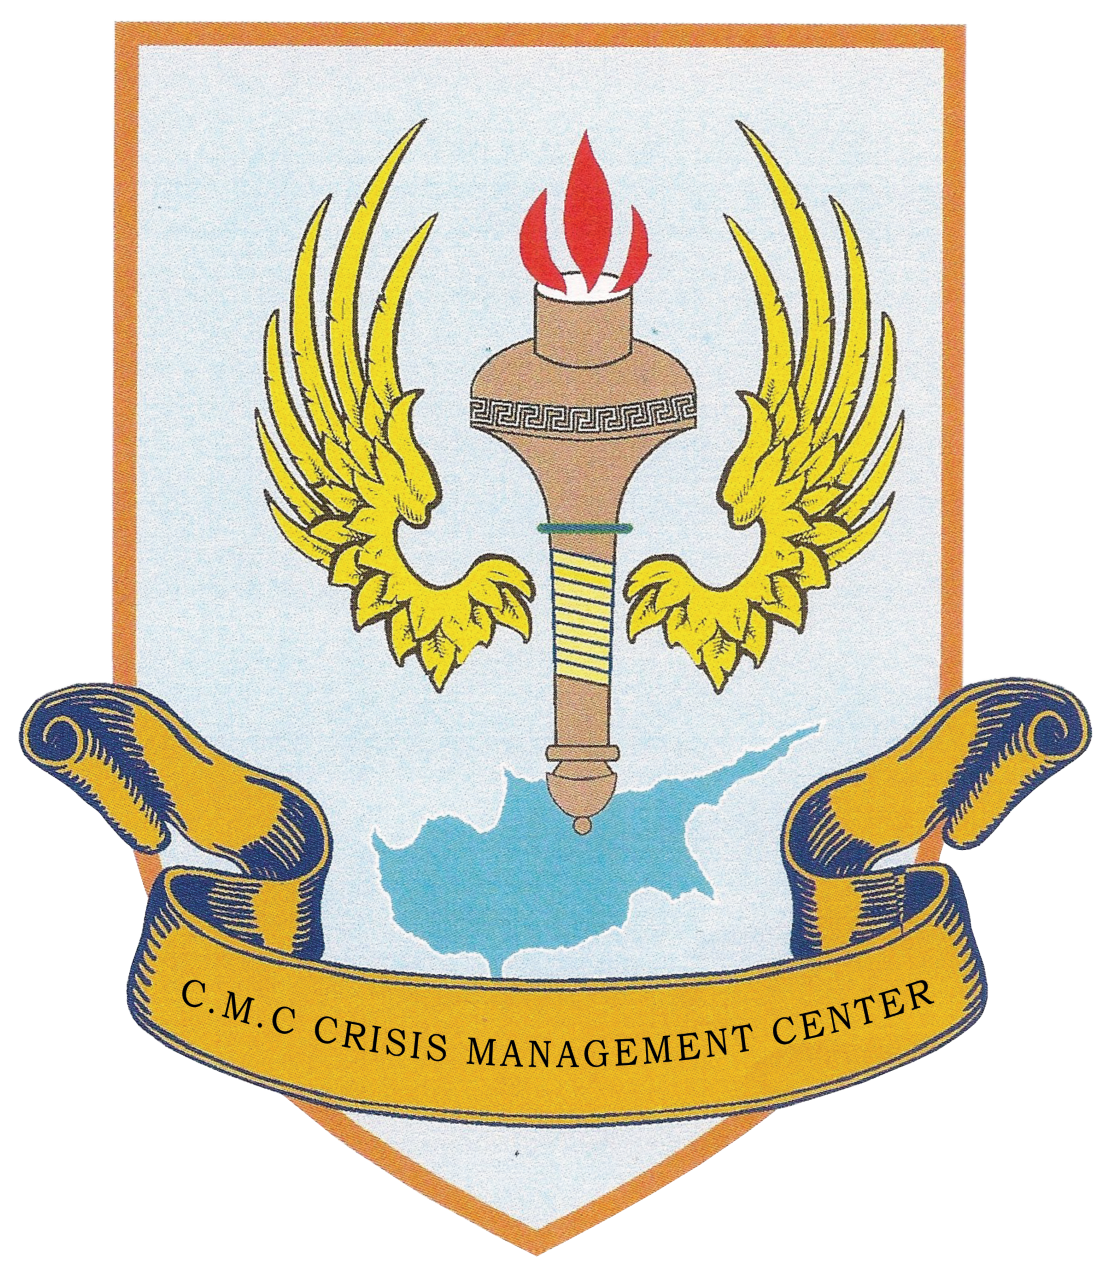 Crisis Management Center Ltd.